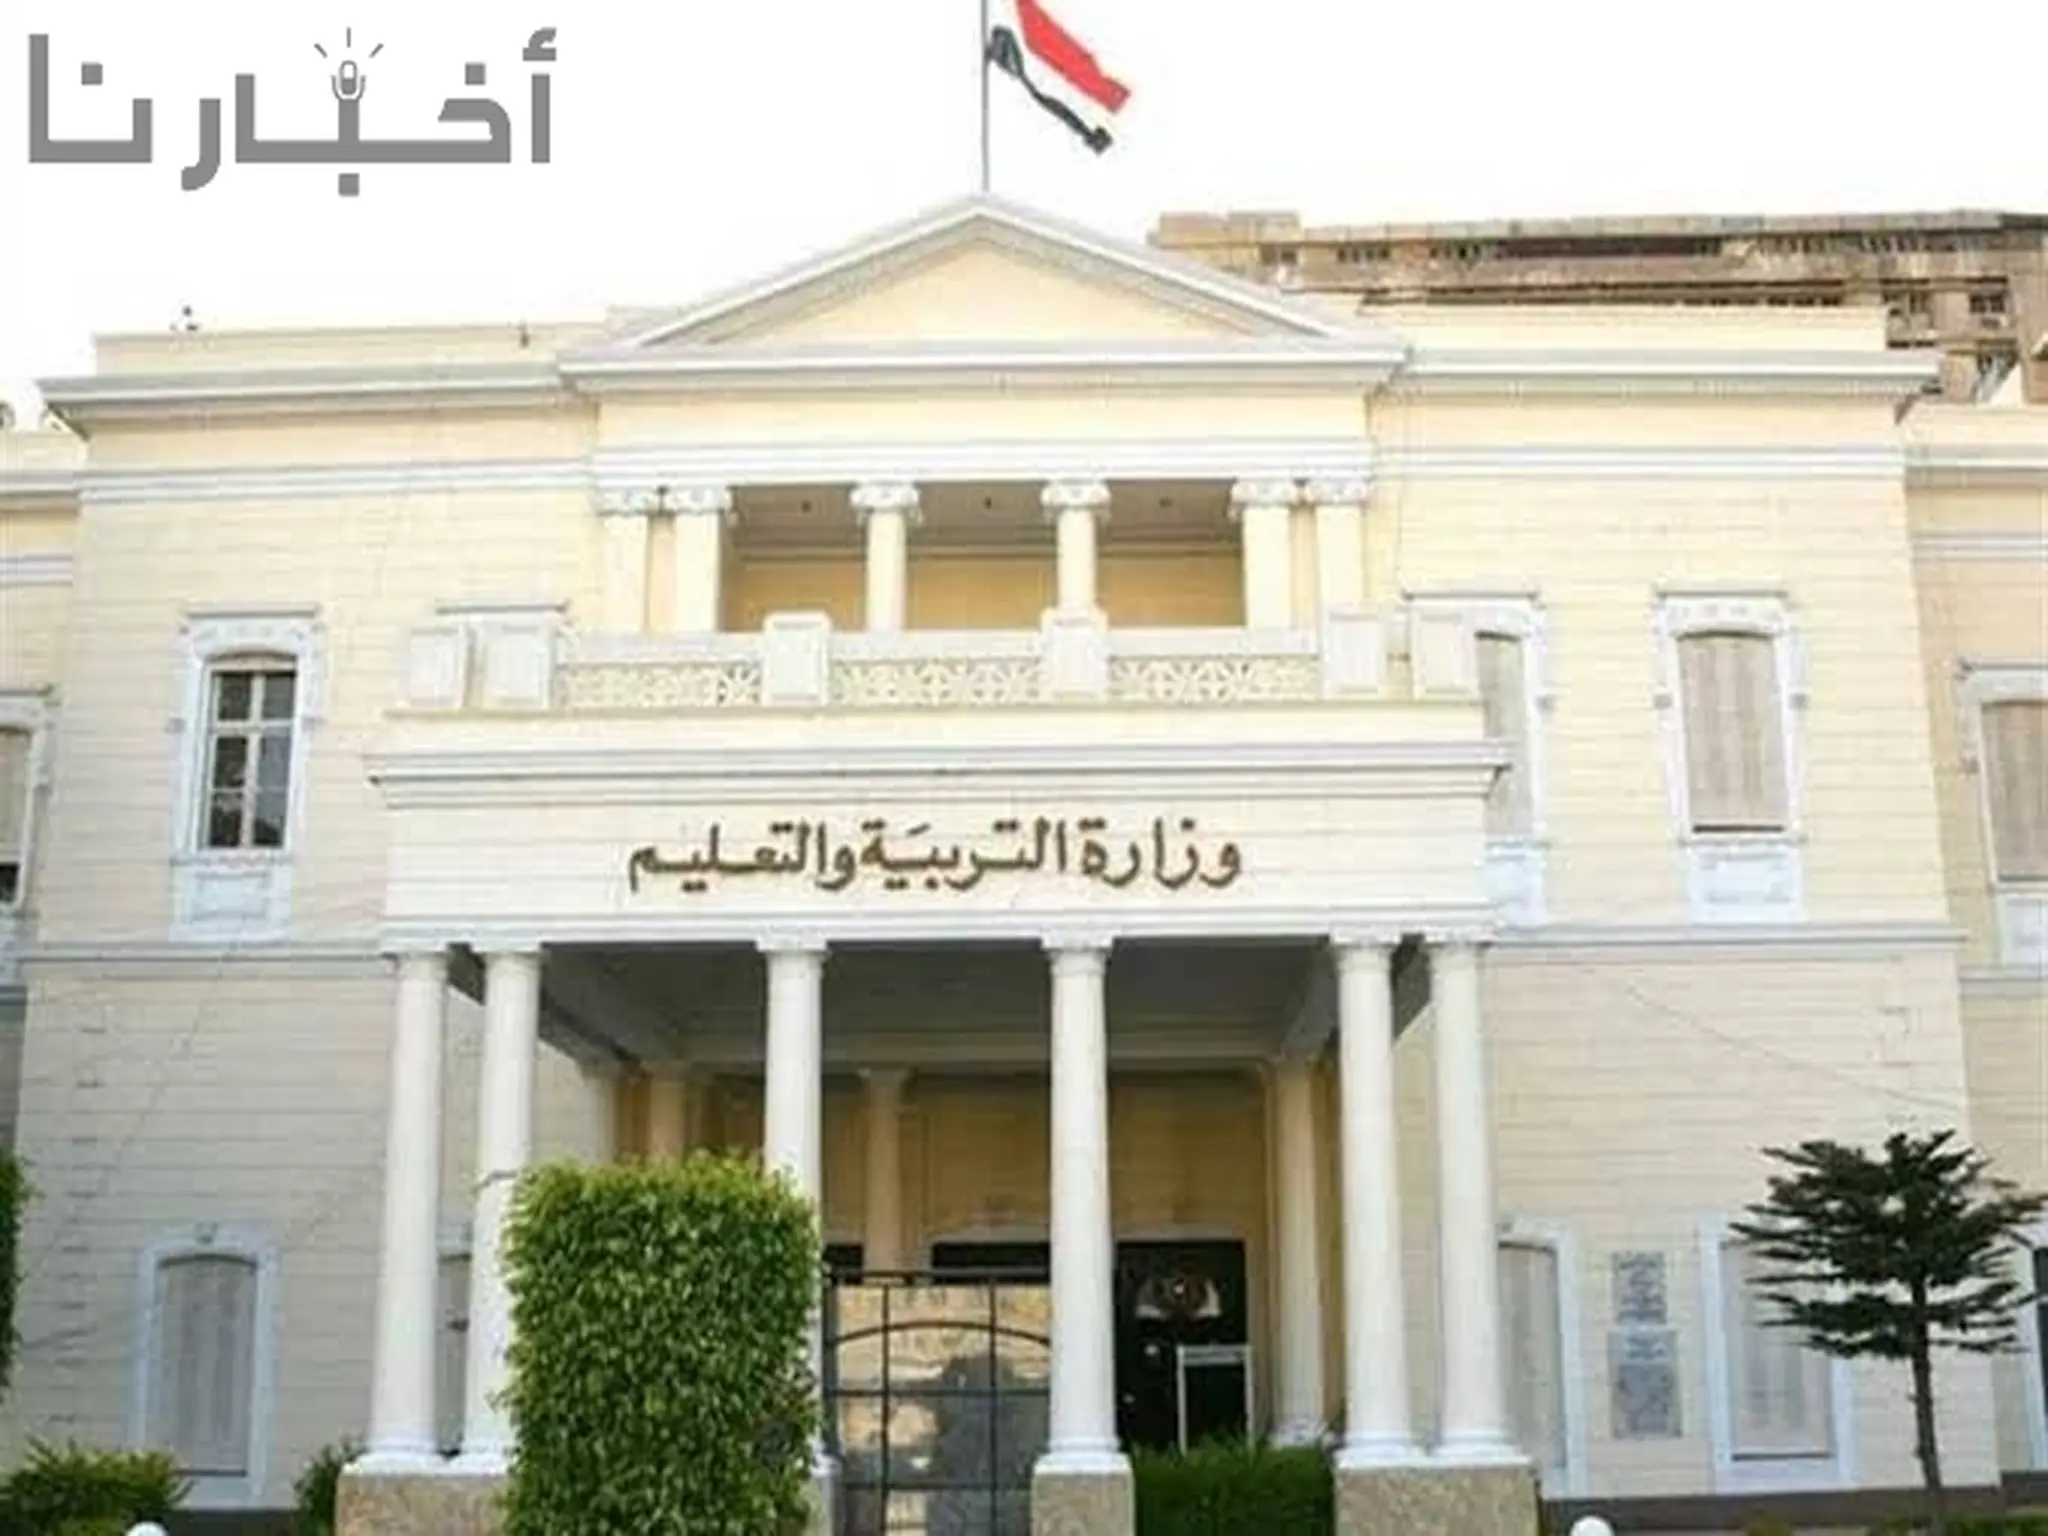 وزير التعليم يصدر قرار بتعيين 30 ألف معلم بعد اجتياز الاختبار المقرر